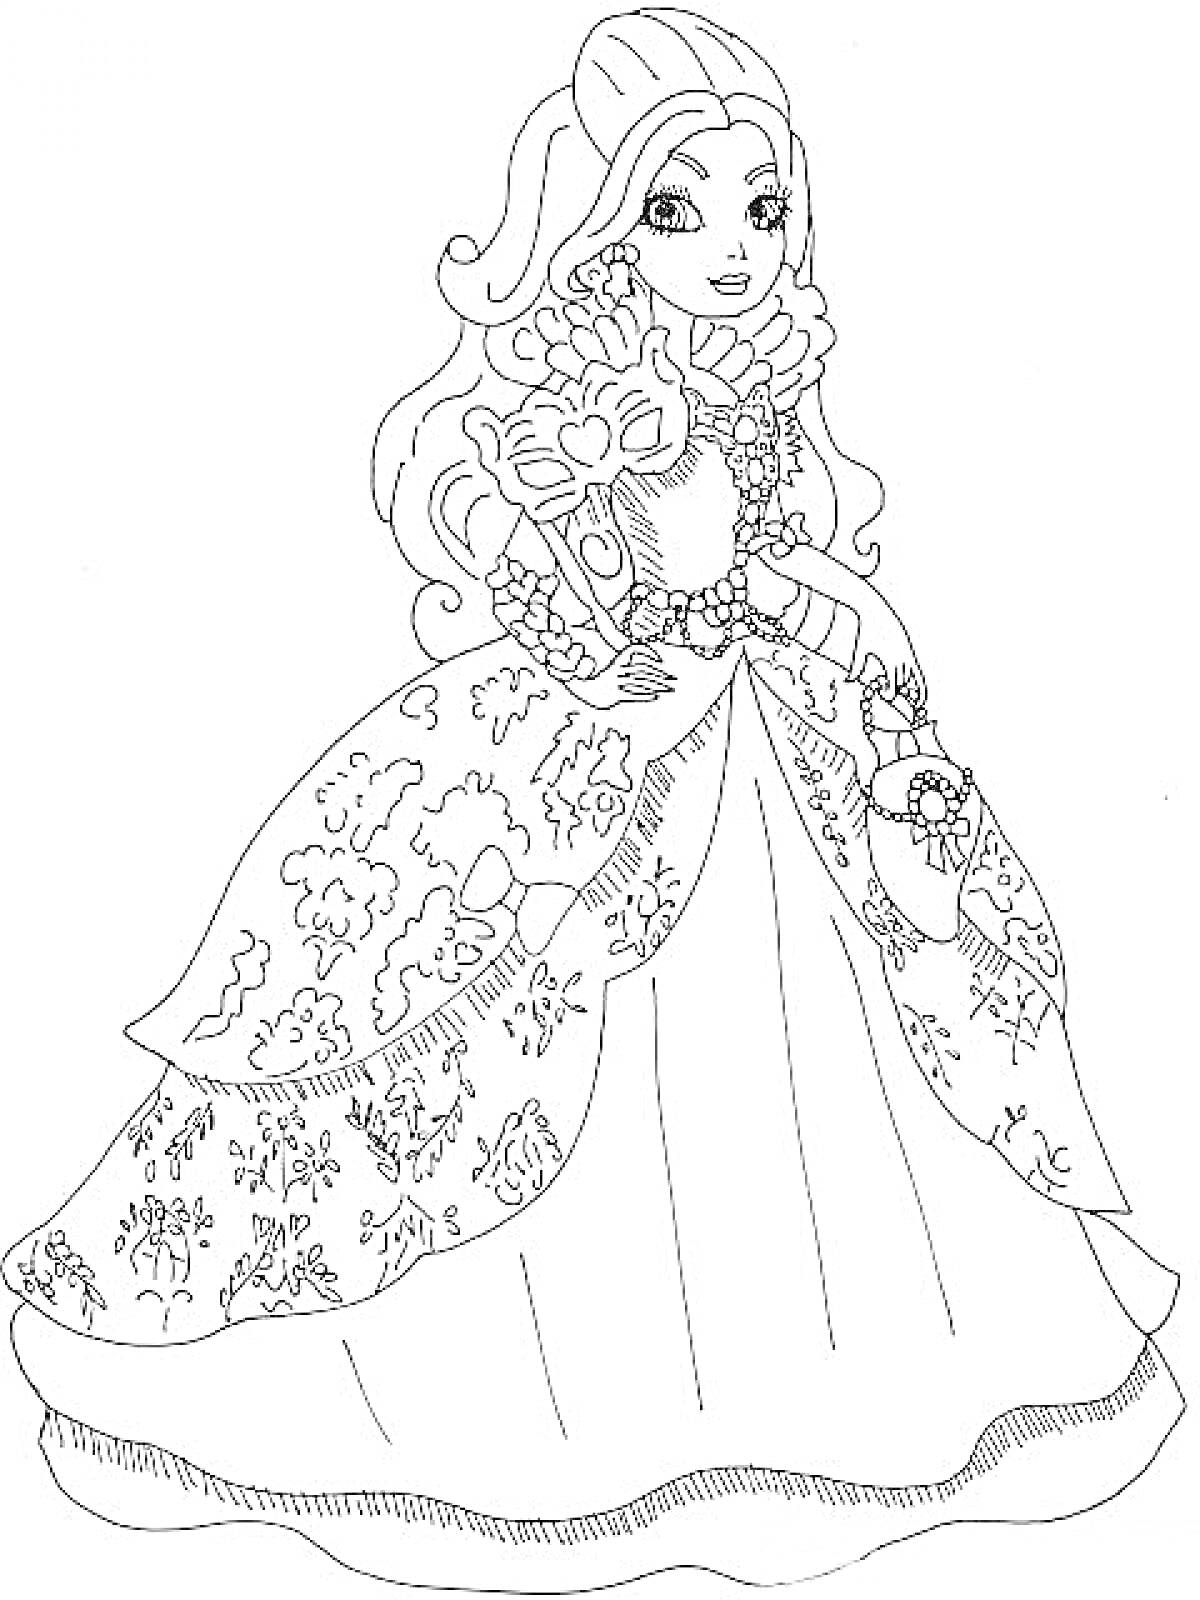 Раскраска Принцесса в роскошном платье с королевской маской